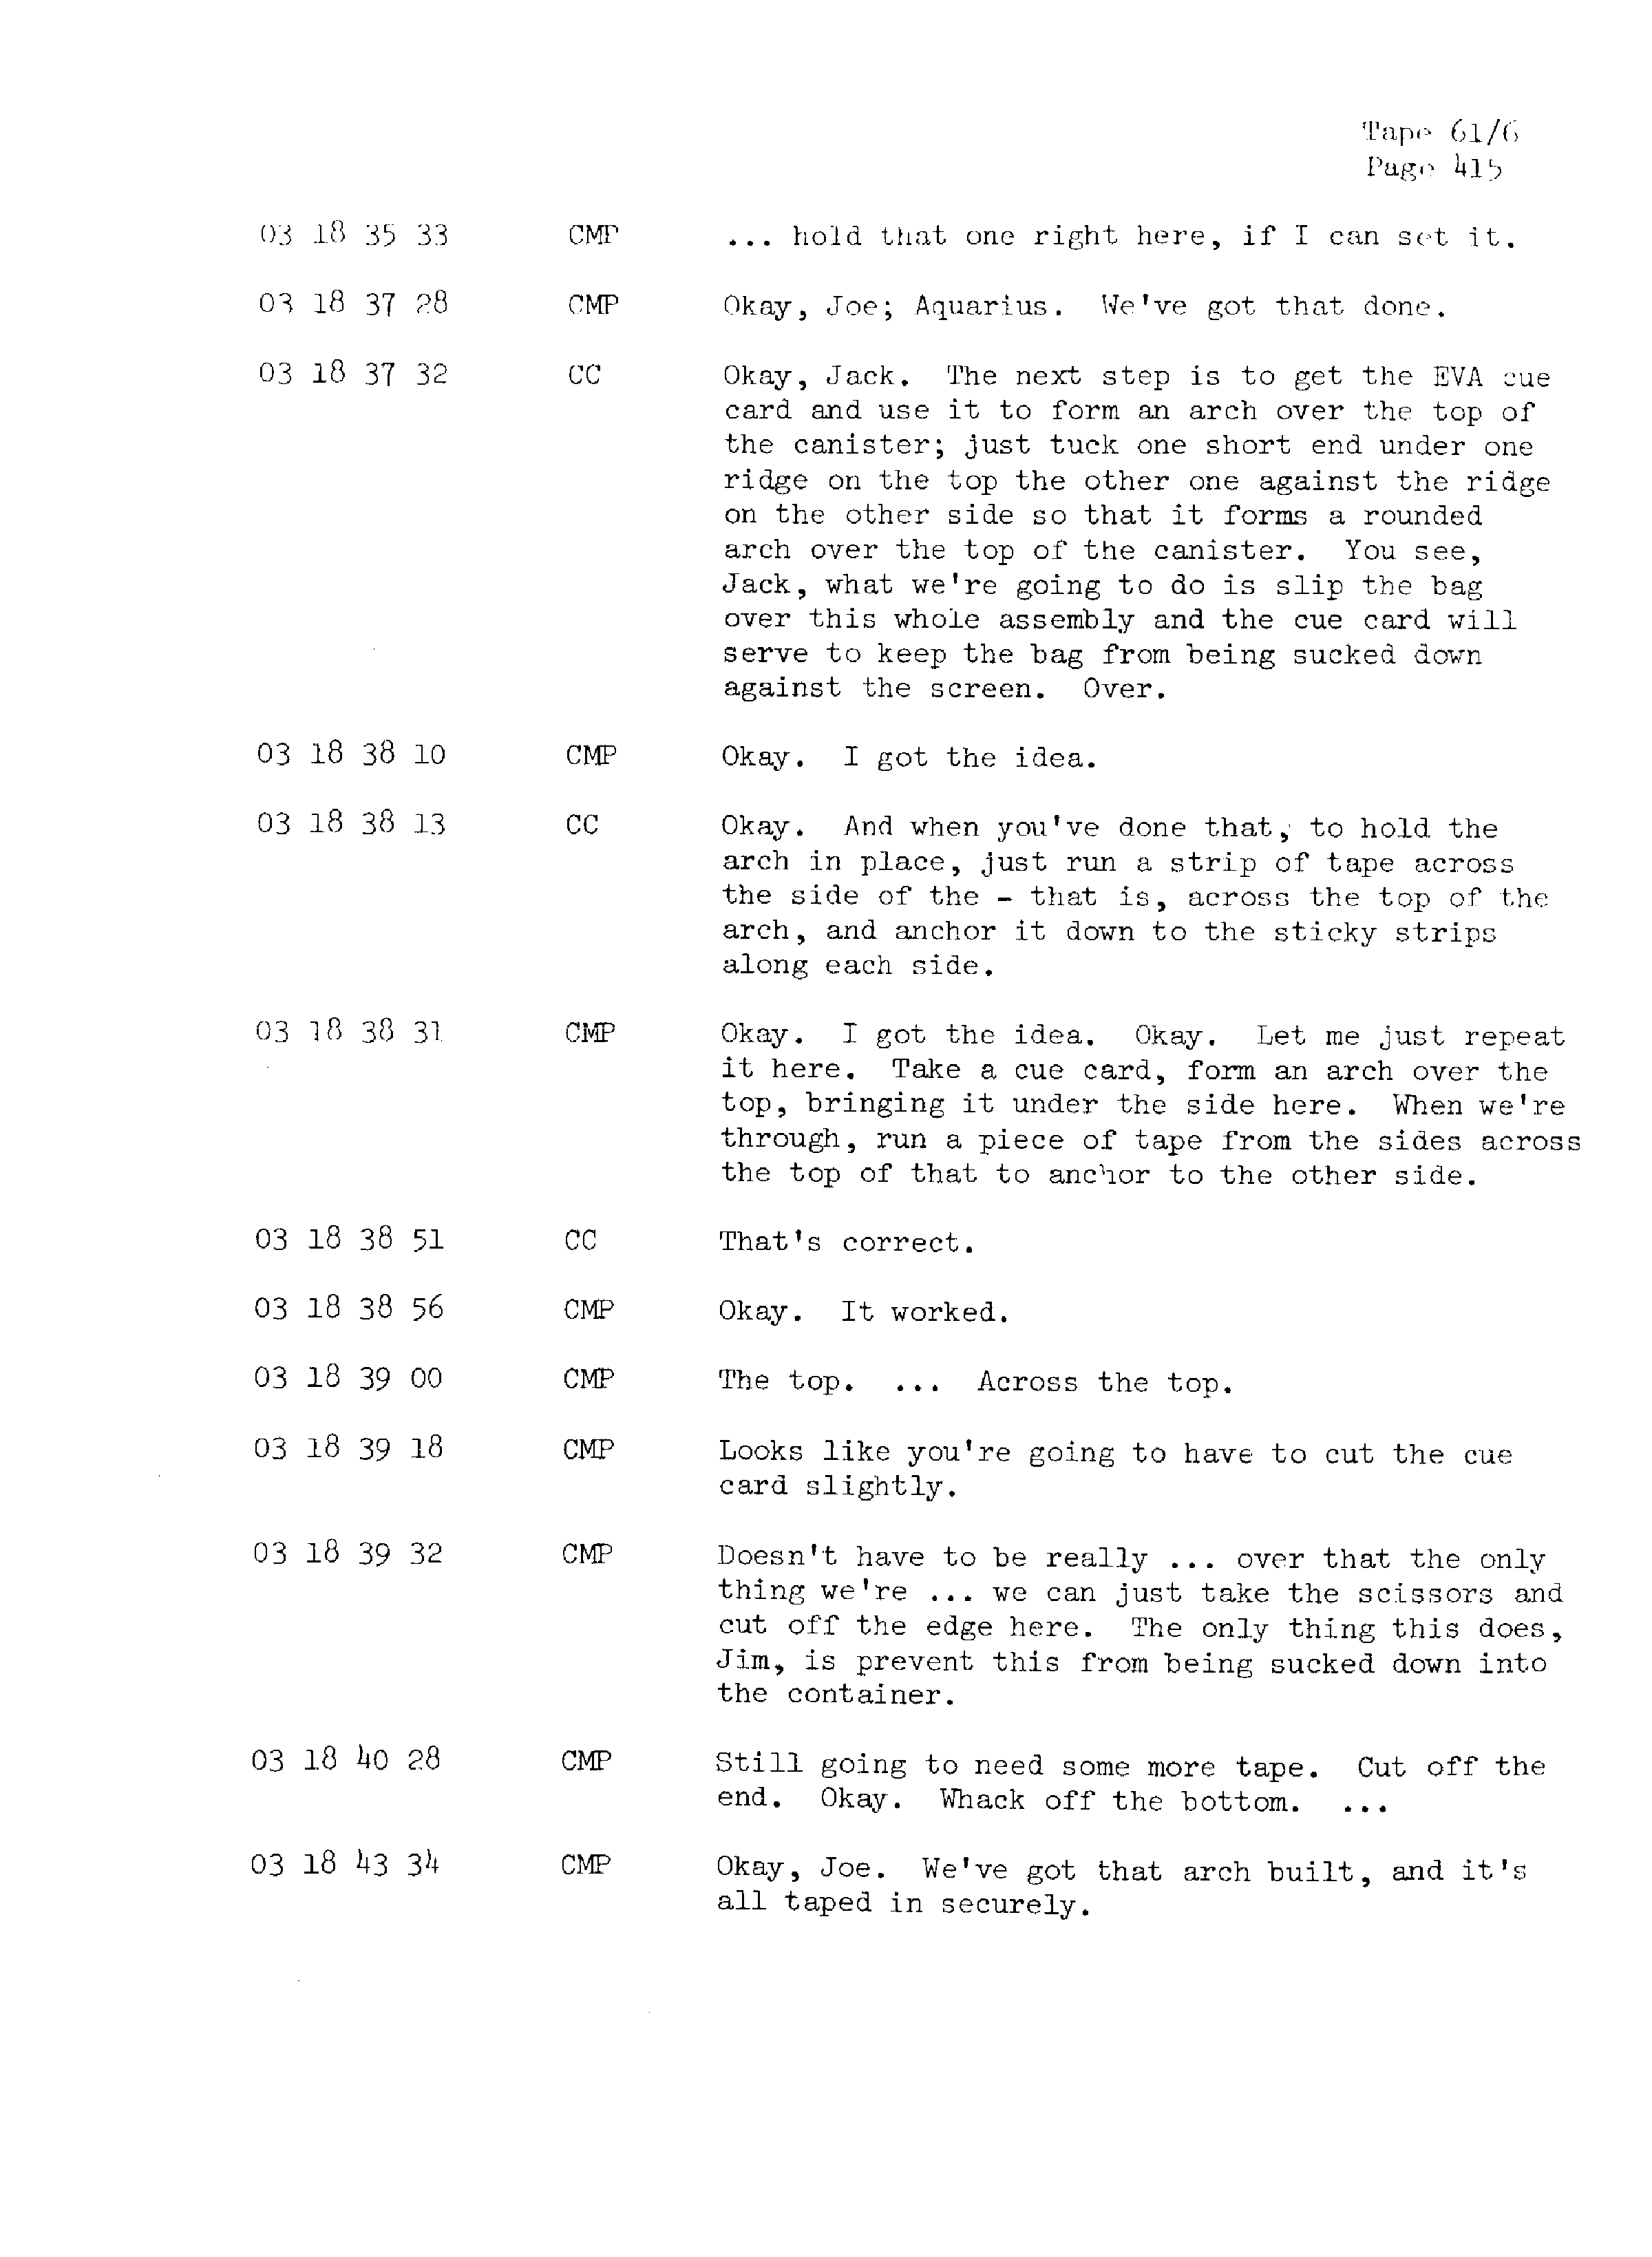 Page 422 of Apollo 13’s original transcript